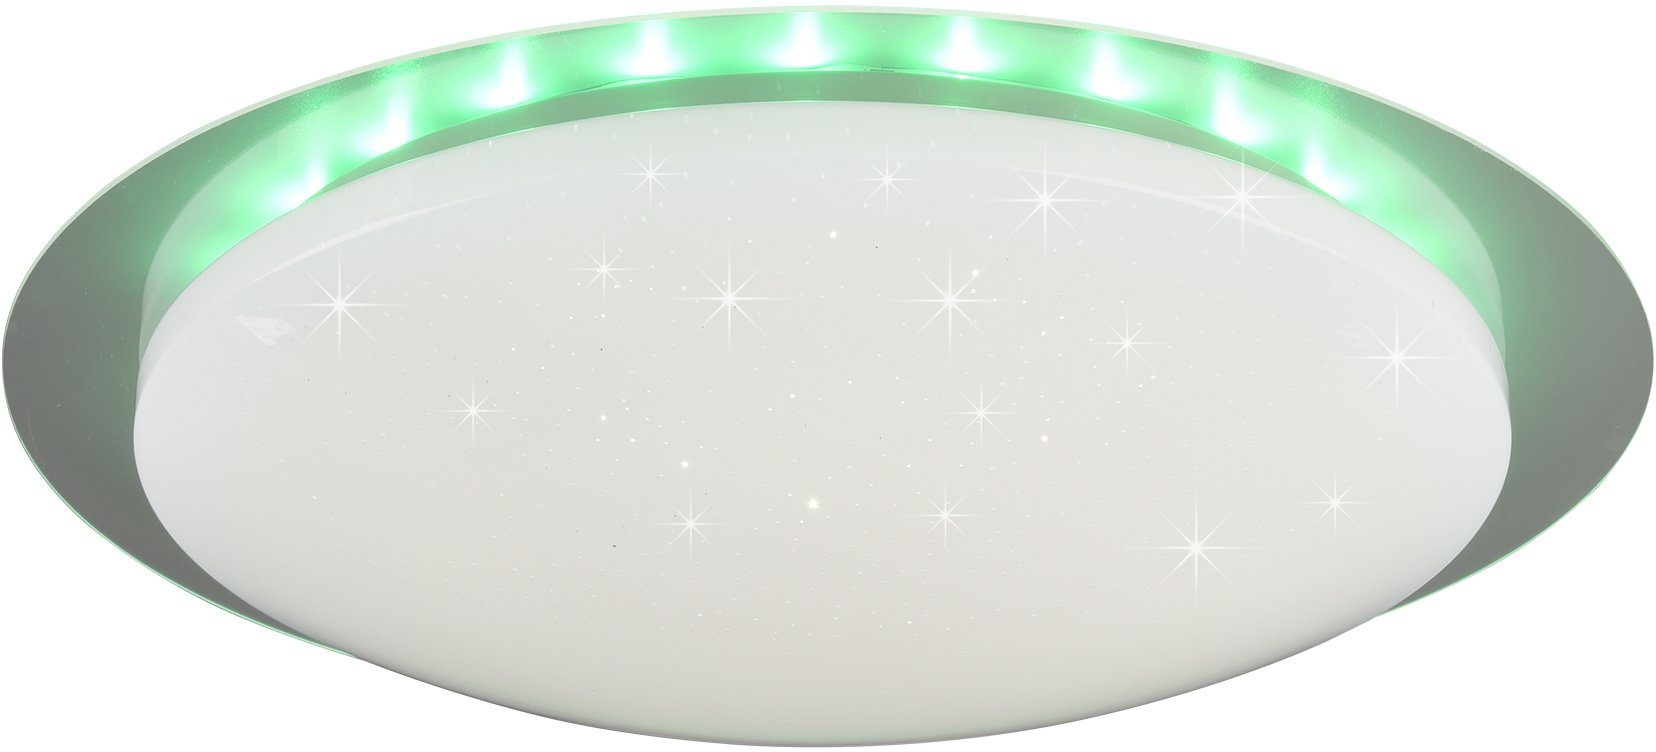 TRIO Leuchten mehrere Helligkeitsstufen, LED RGB Farbwechsler, 48 Fernbed., Ø schaltbar, inkl. LED Dimmer integriert, Joleen, Deckenleuchte Backlight, mit Starlight-Effekt, Dimmer, cm getrennt fest